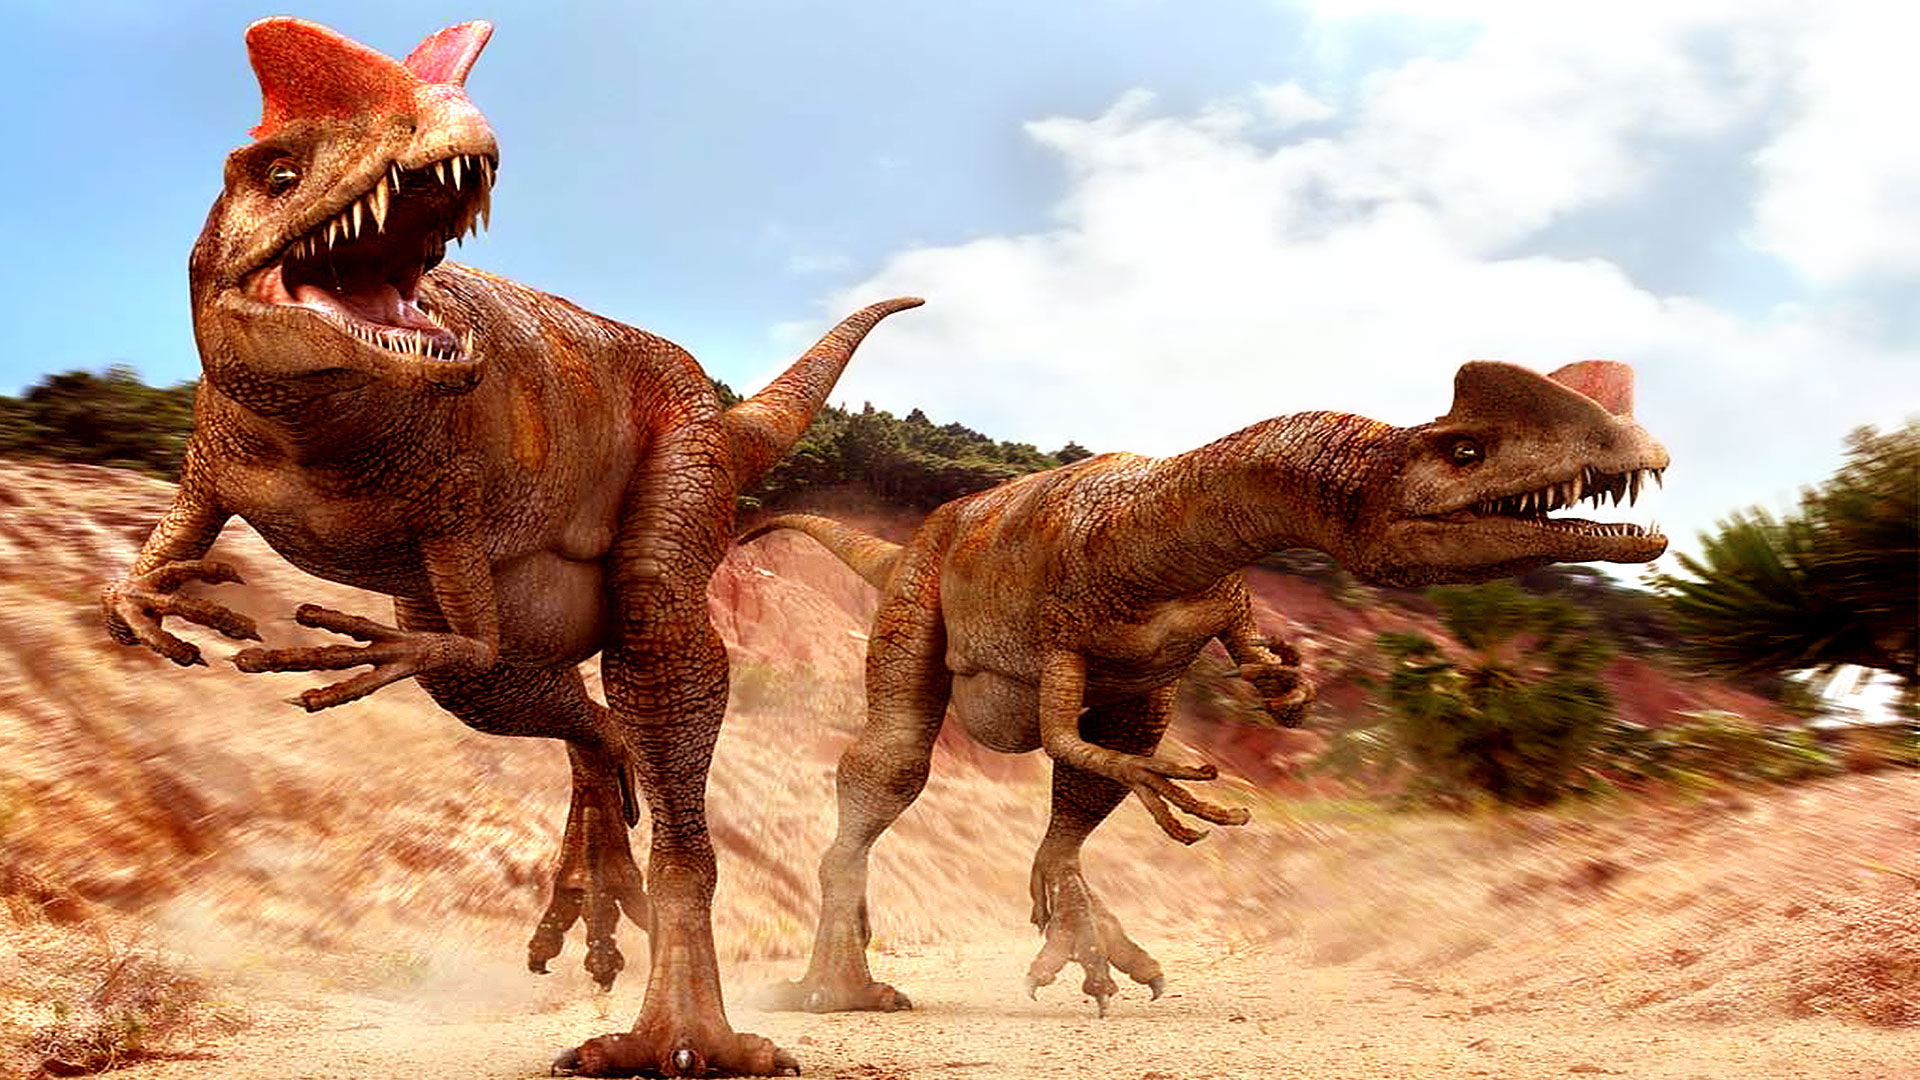 Le dilophosaure ou Dilophosaurus, présent dans le film Jurassic Park